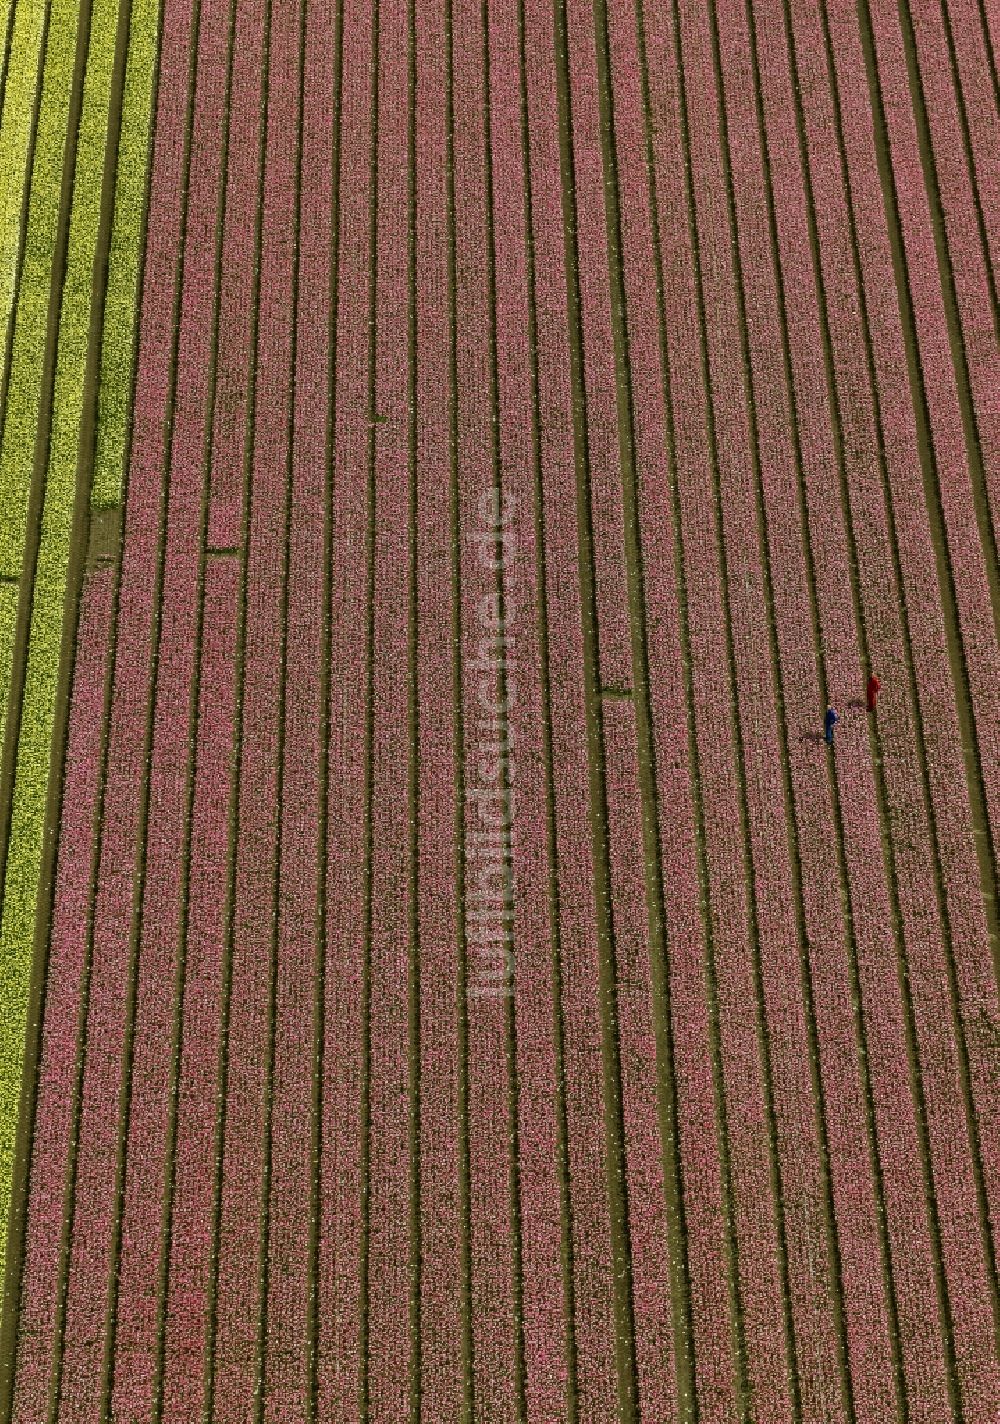 Luftaufnahme Zuidoostbeemster - Landwirtschafts - Landschaft mit Tulpenfeldern zur Blumenproduktion bei Zuidoostbeemster in Nordholland in Holland / Niederlande